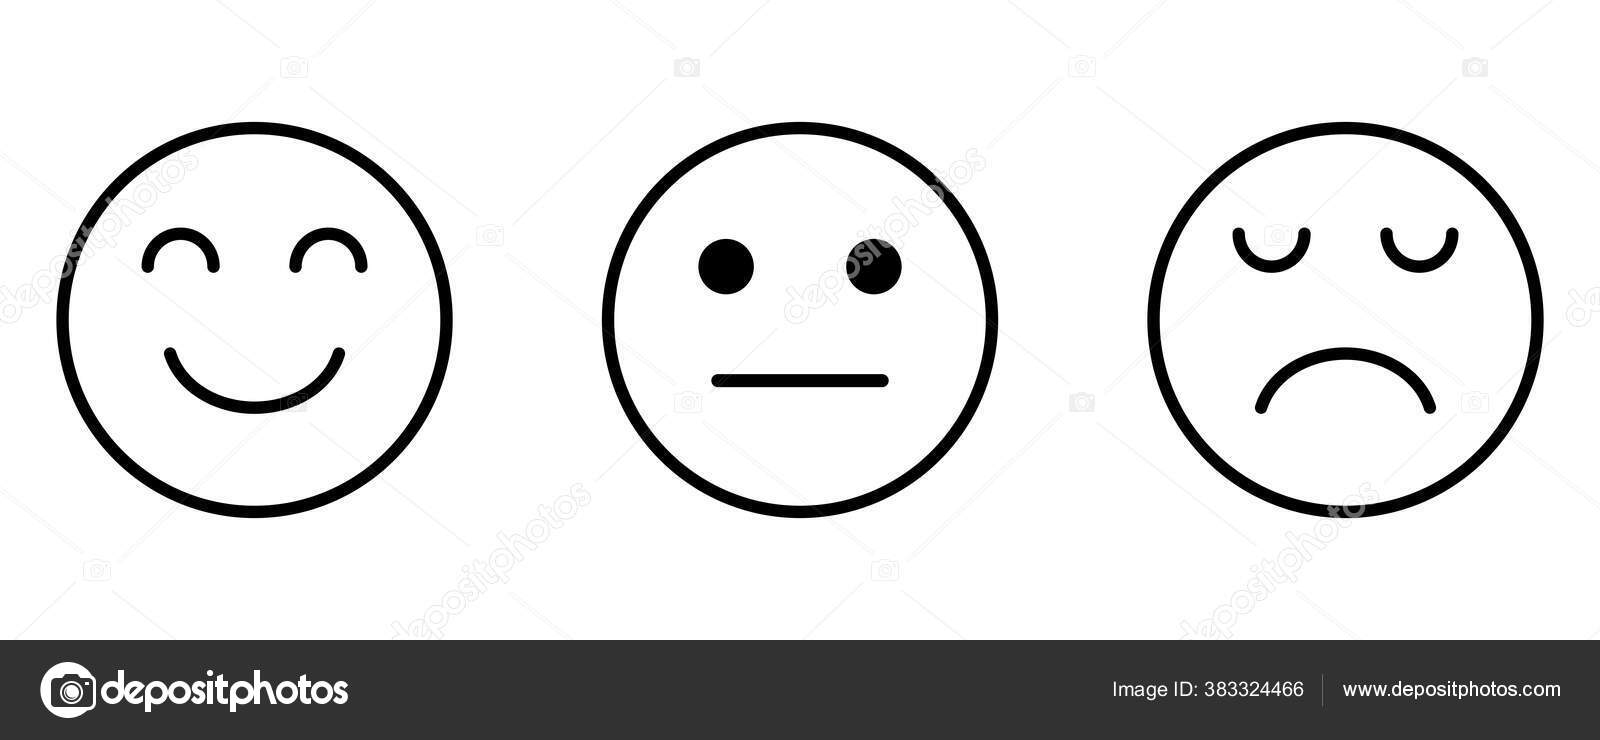 Smiley Sad Neutral Face Feedback Satisfaction Facial Emotion Emoji ...